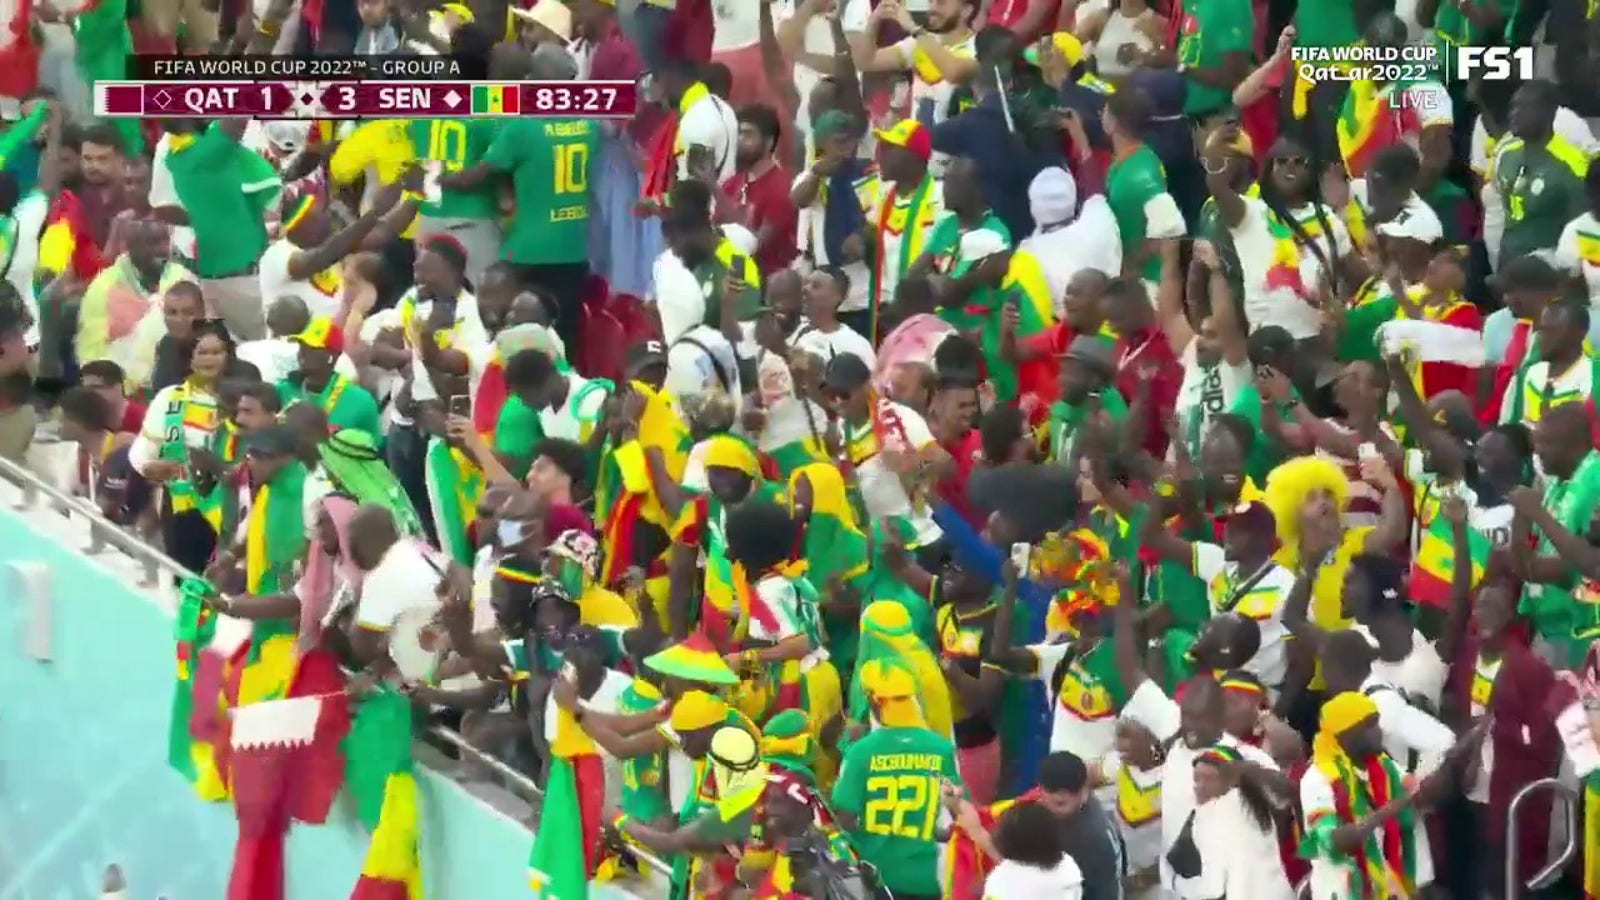 Dieng goal helps Senegal extend lead